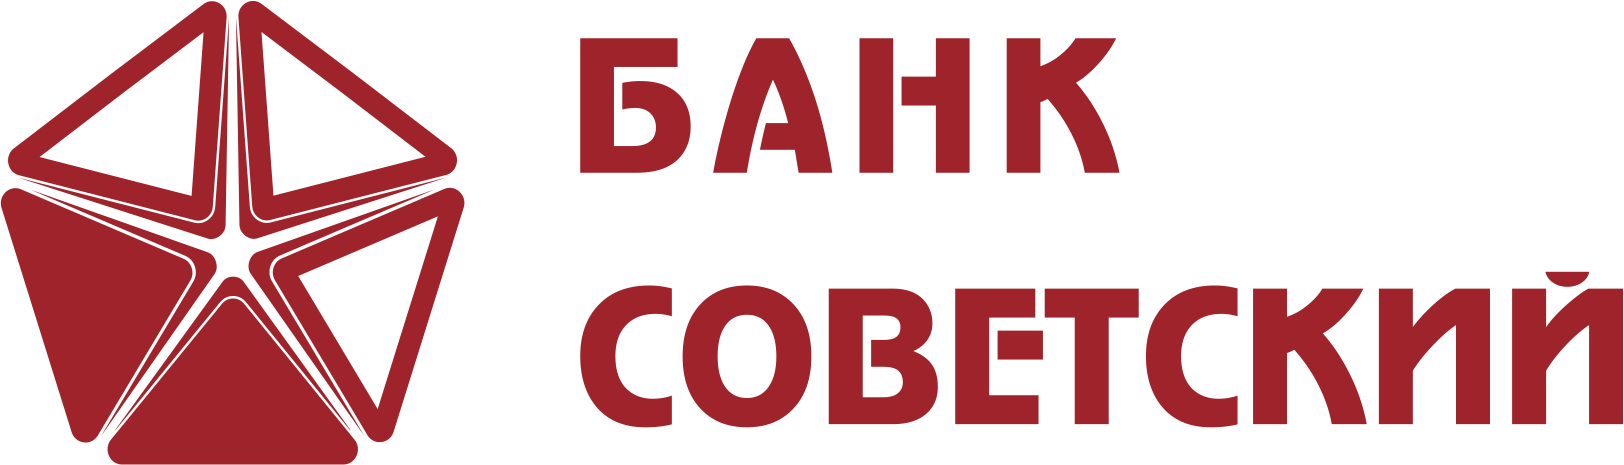 Банк Советский лого